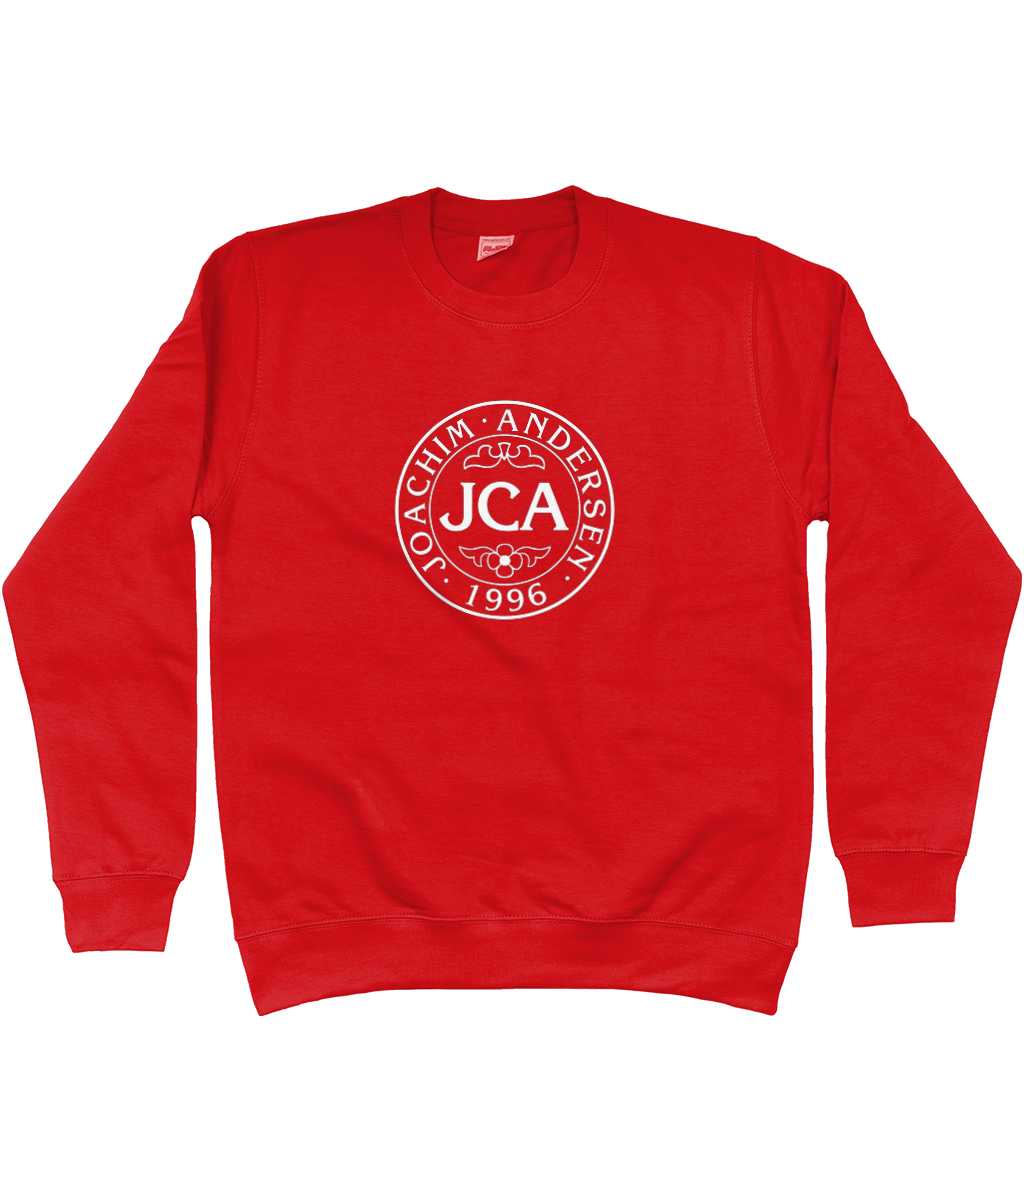 Joachim Andersen JCA - Sweatshirt